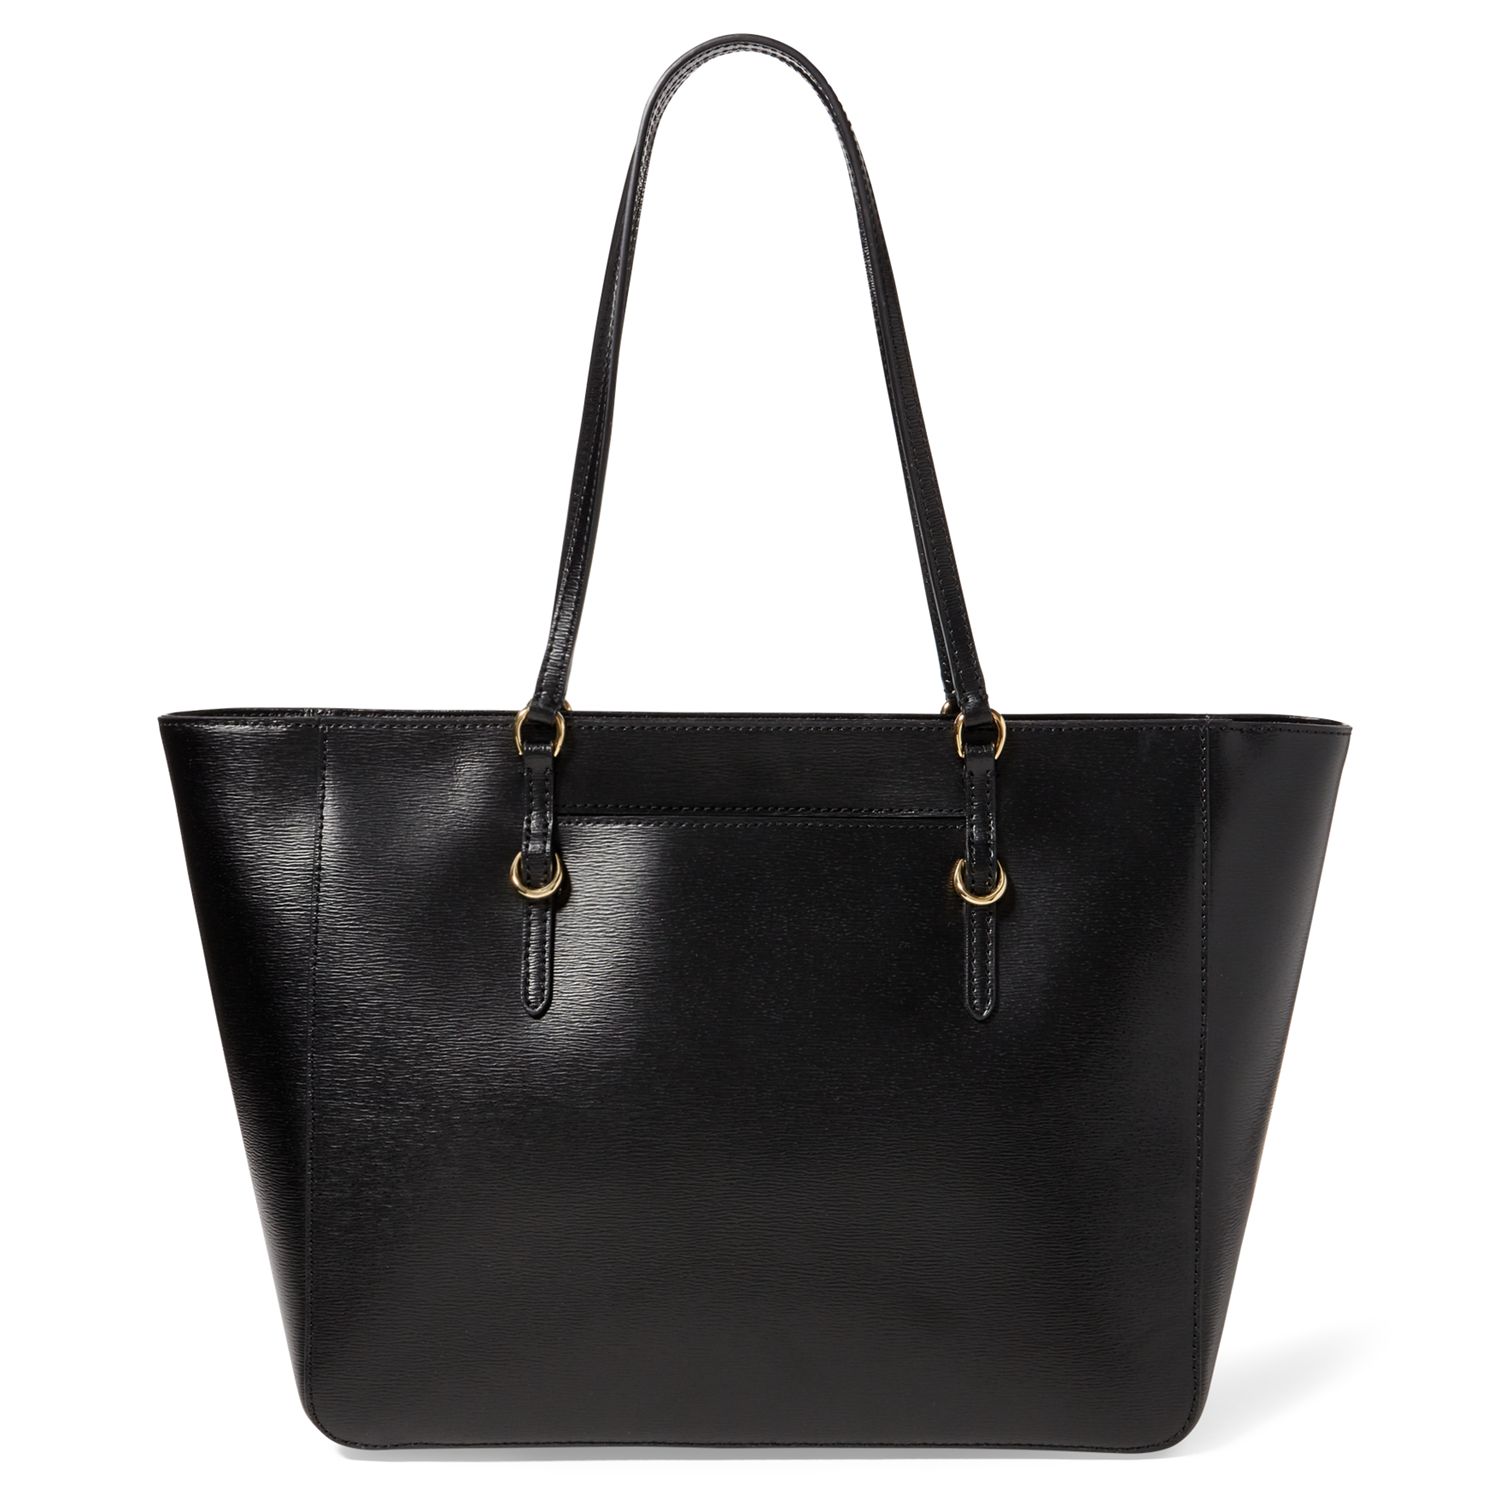 Lauren Ralph Lauren Saffiano Leather Tote Bag, Black